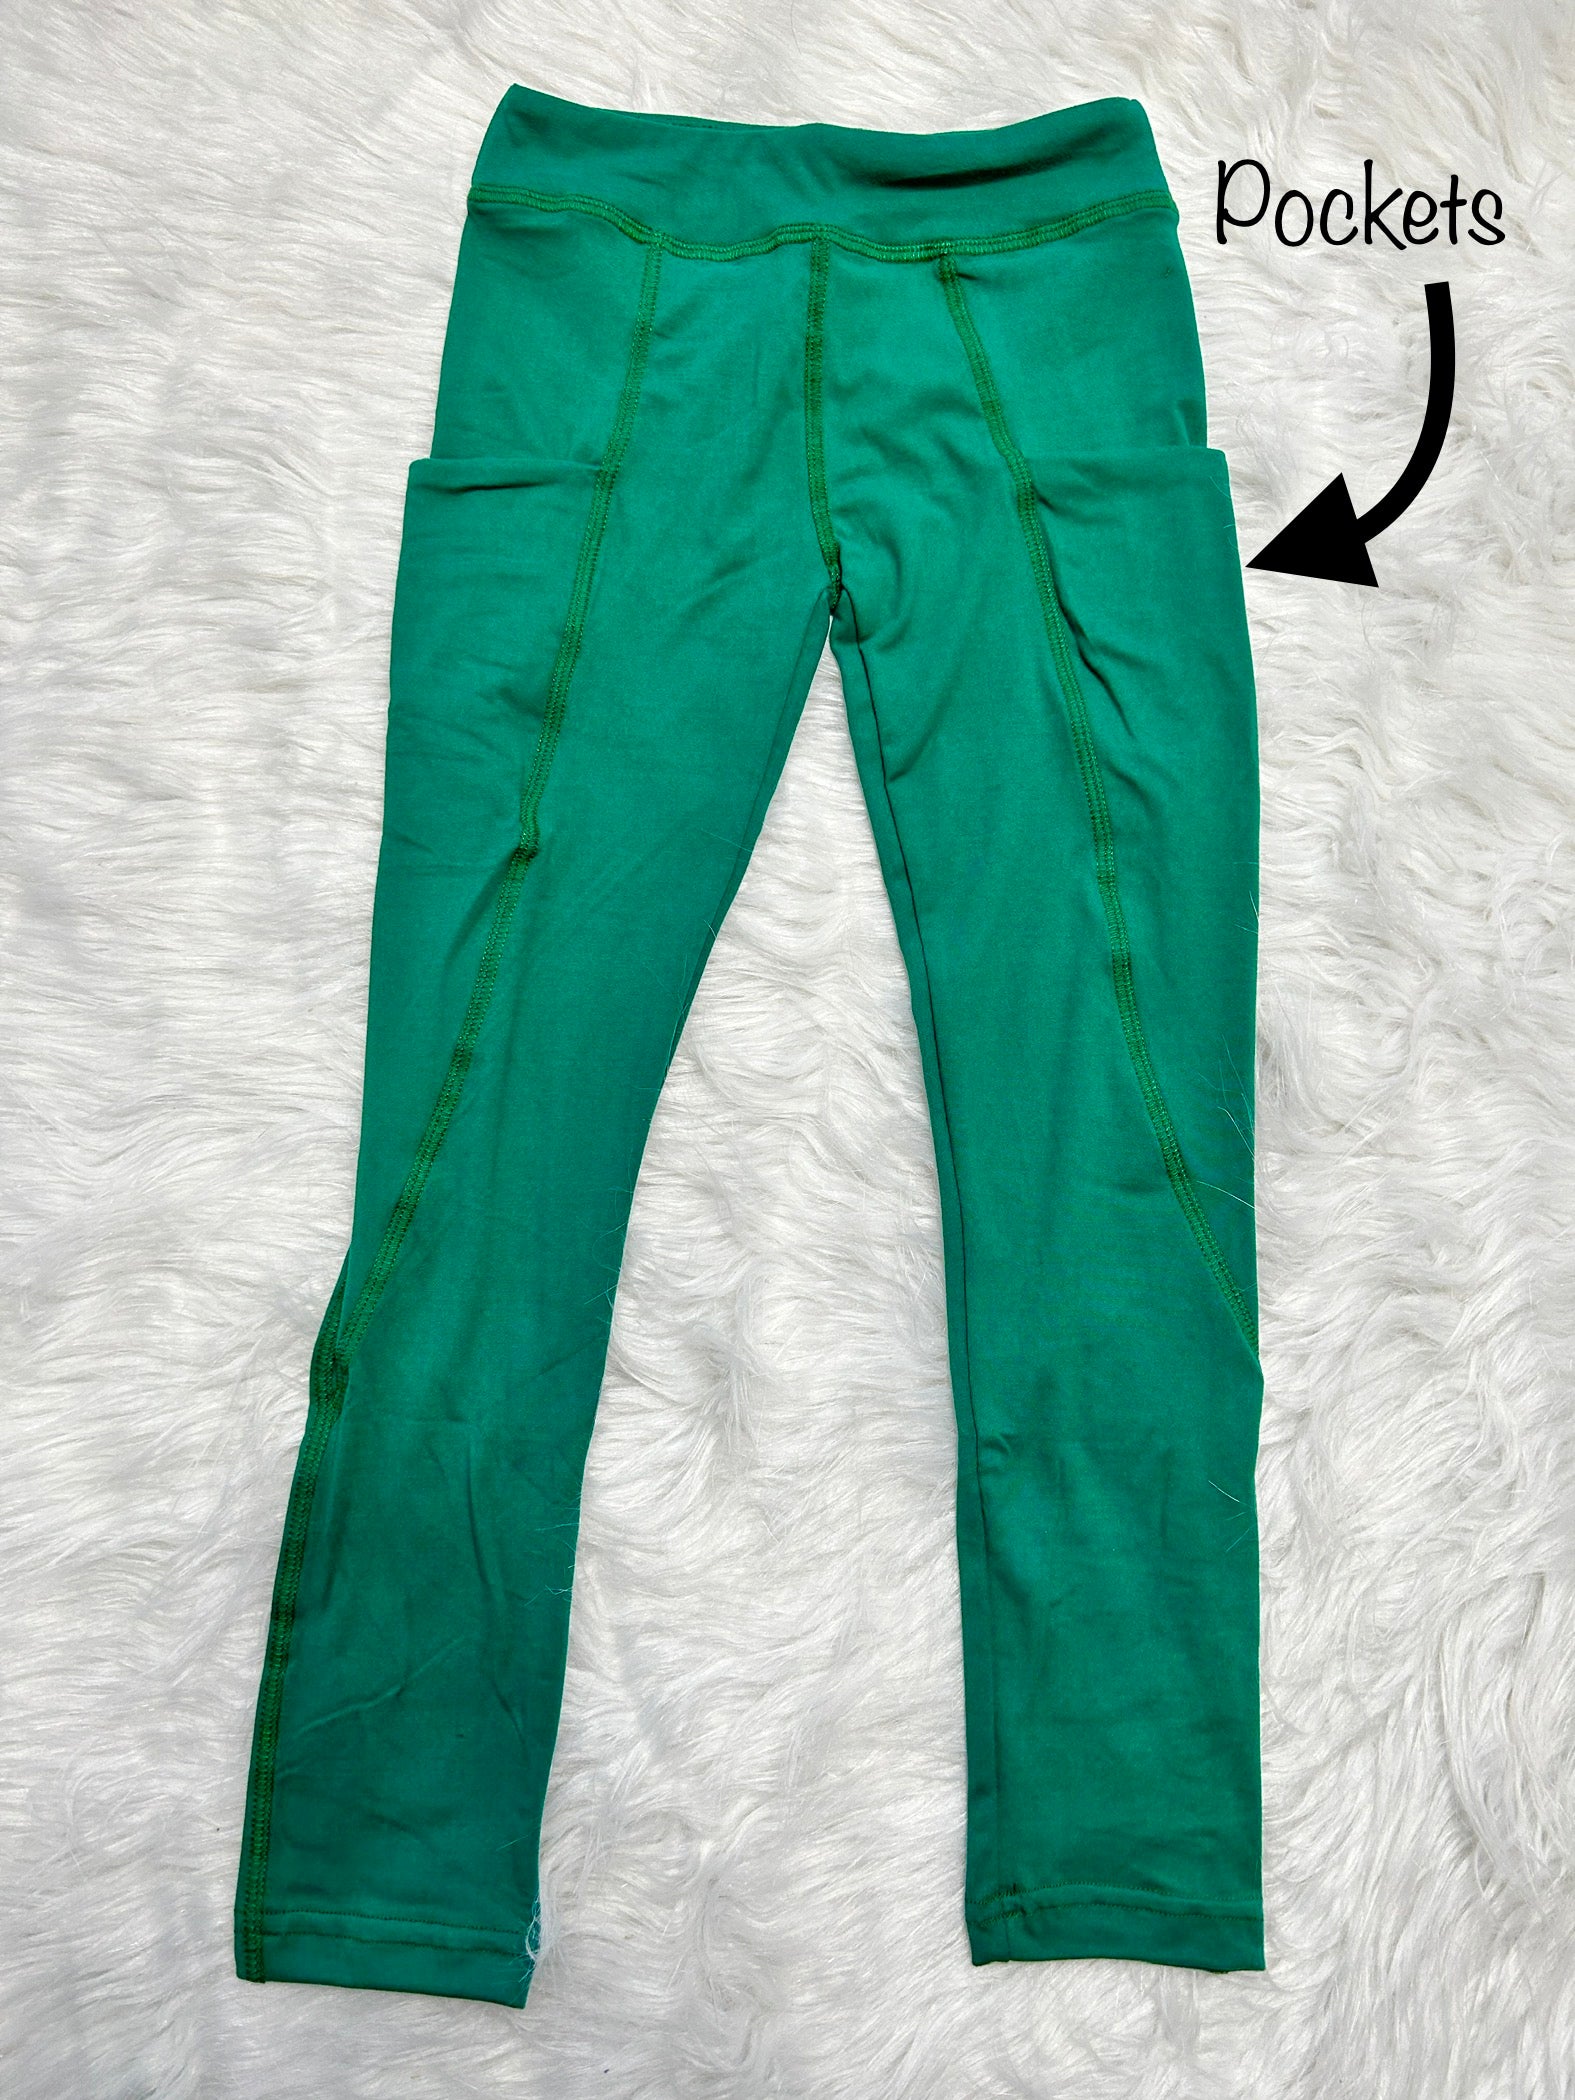 Girls Green Metallic Leggings green leggings, green pants, green metallic  pants, Christmas pants, costume pants, green dance pants, emerald -   Portugal